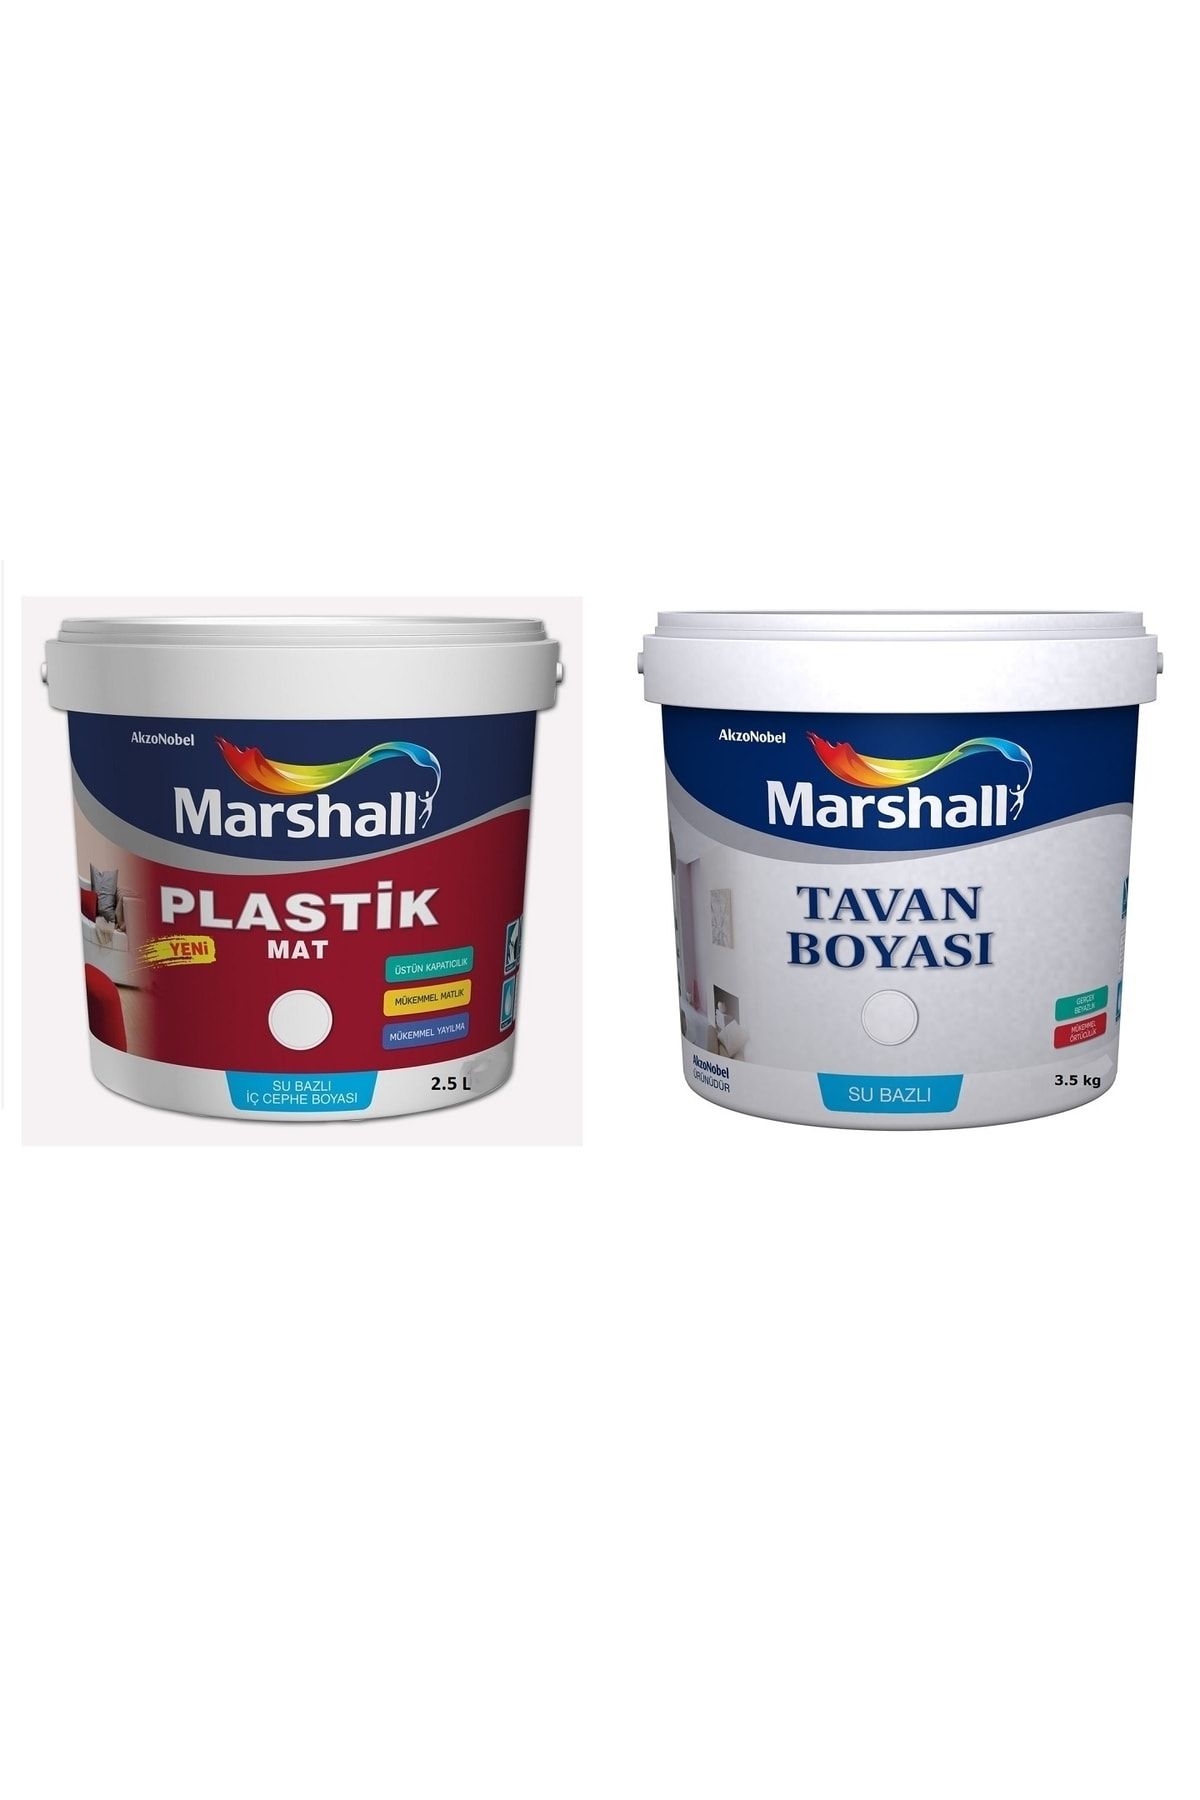 Marshall Plastik Mat Su Bazlı Silinebilir Duvar Boyası Siyah 2.5 Lt Tavan Boyası 3.5 Kg Mükemmel Beyazlık